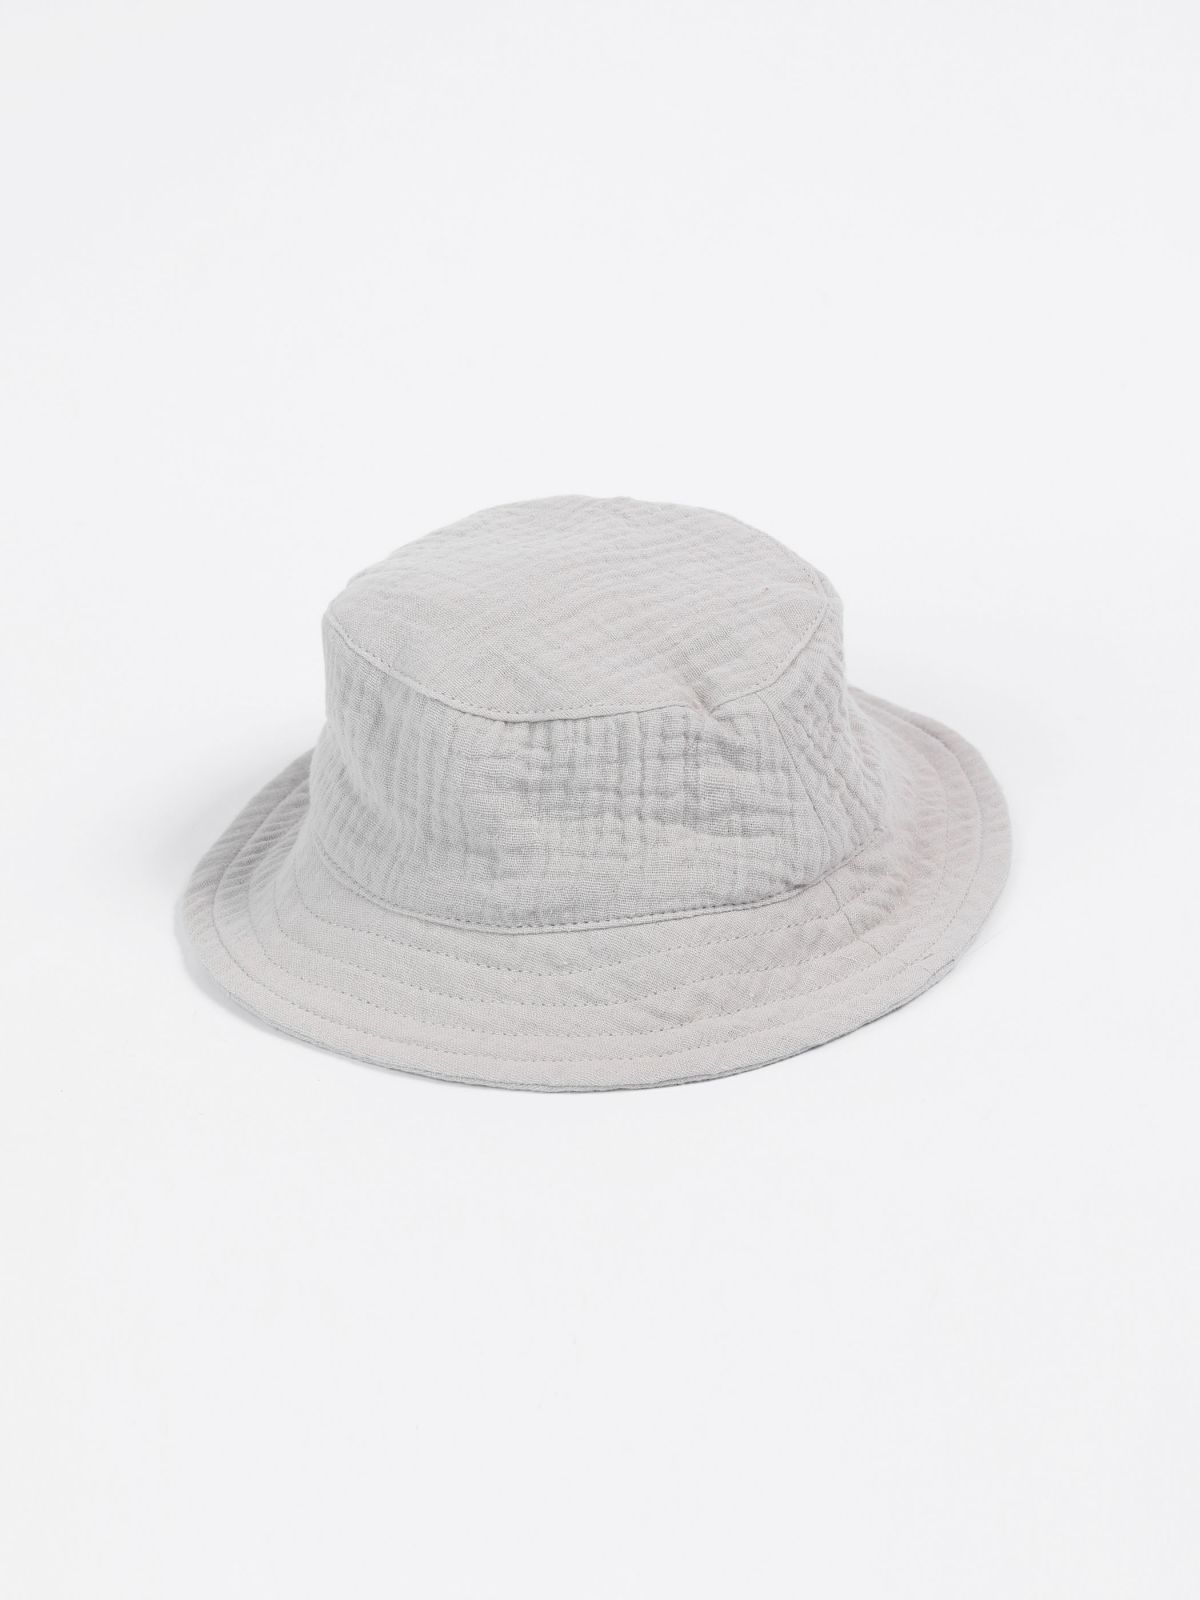  כובע באקט / בייבי בנות של TERMINAL X KIDS